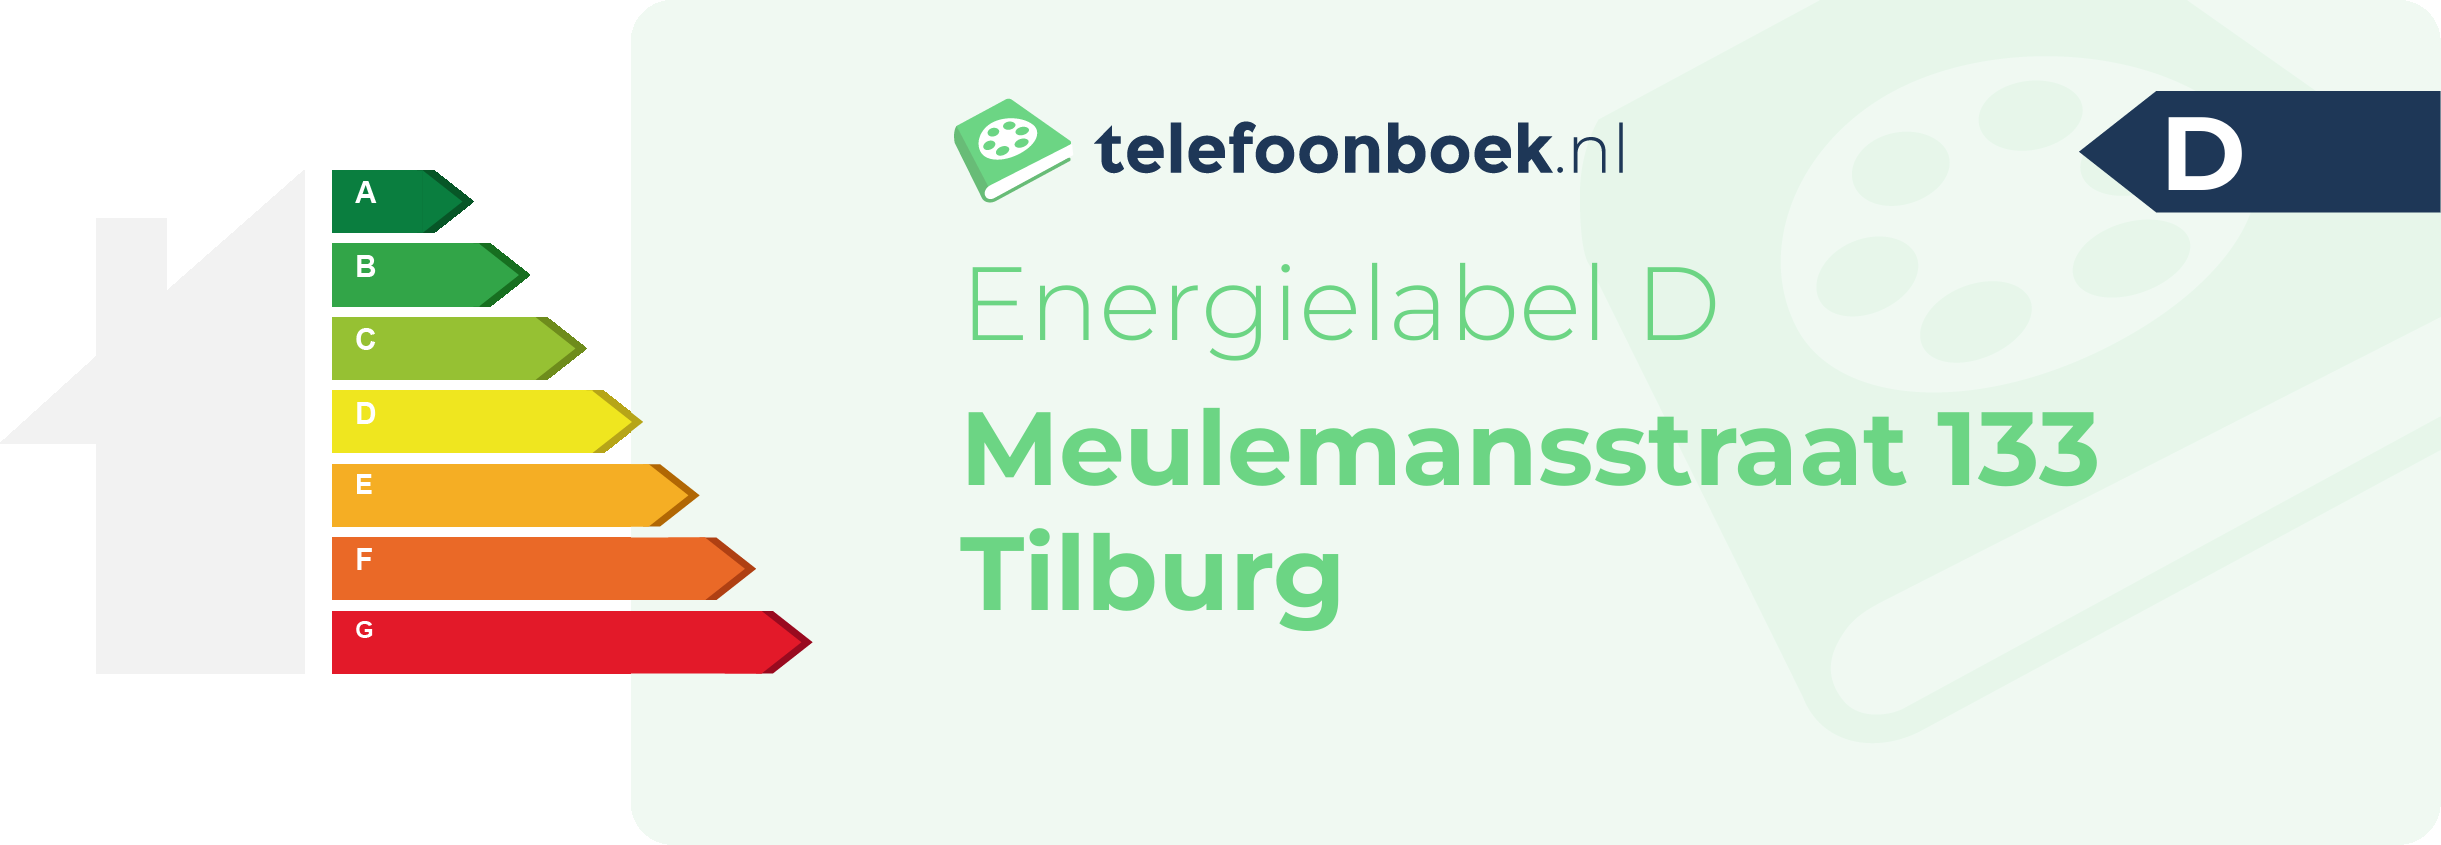 Energielabel Meulemansstraat 133 Tilburg